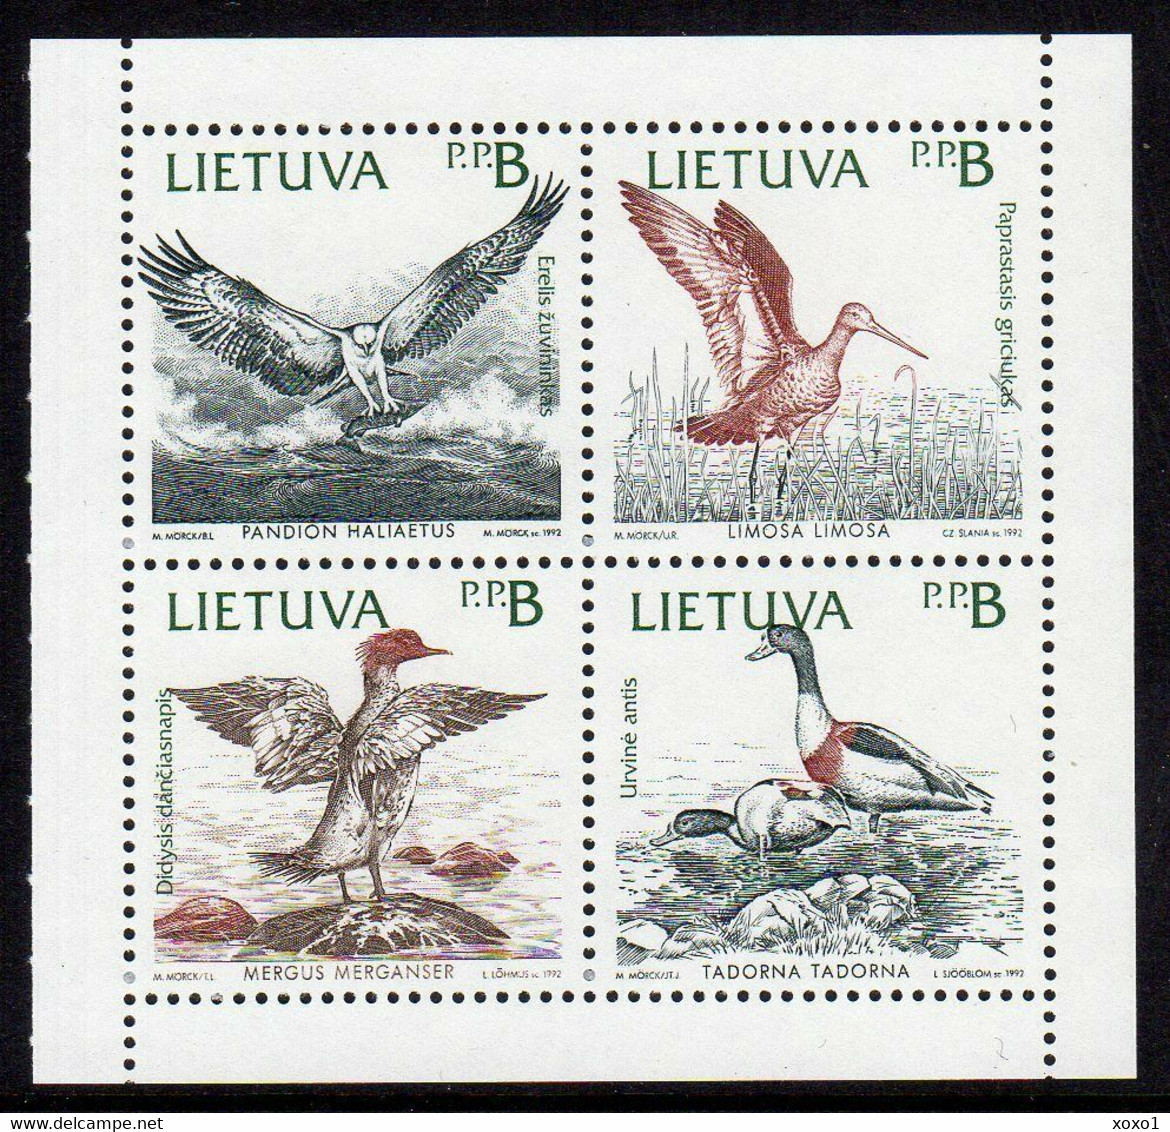 Lithuania 1992 MiNr. 501-4 Litauen Joint Issues BIRDS Osprey, Black-tailed Godwit, Merganser, Shelduck 4v Mnh ** 2.50 € - Lithuania